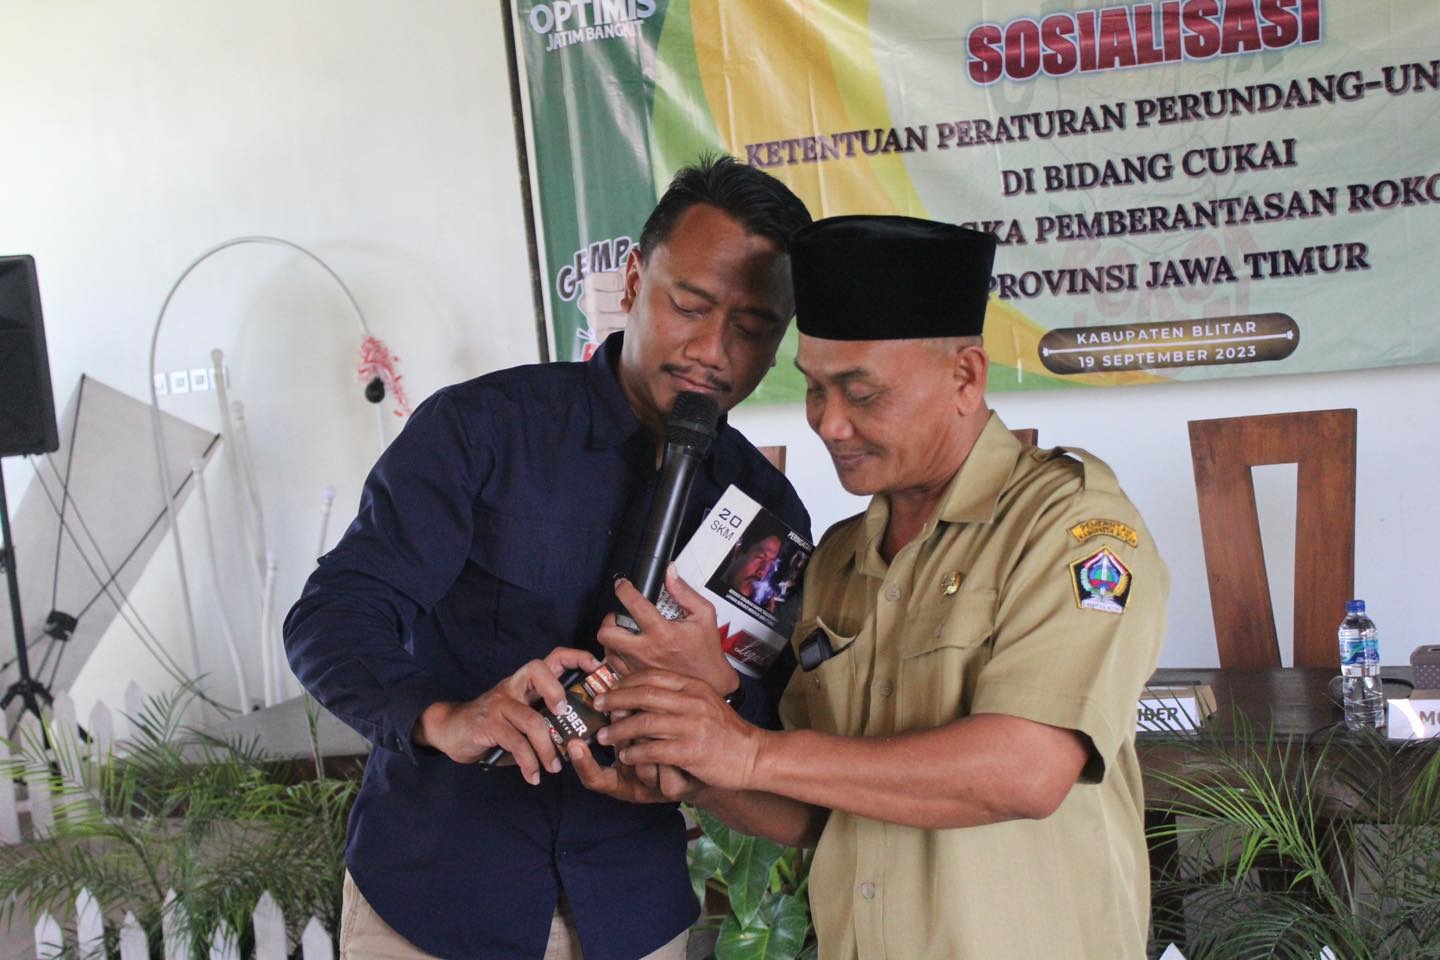 Sosialisasi cukai dan rokok ilegal yang dilakukan Kanwil DJBC Jawa Timur II kepada masyarakat